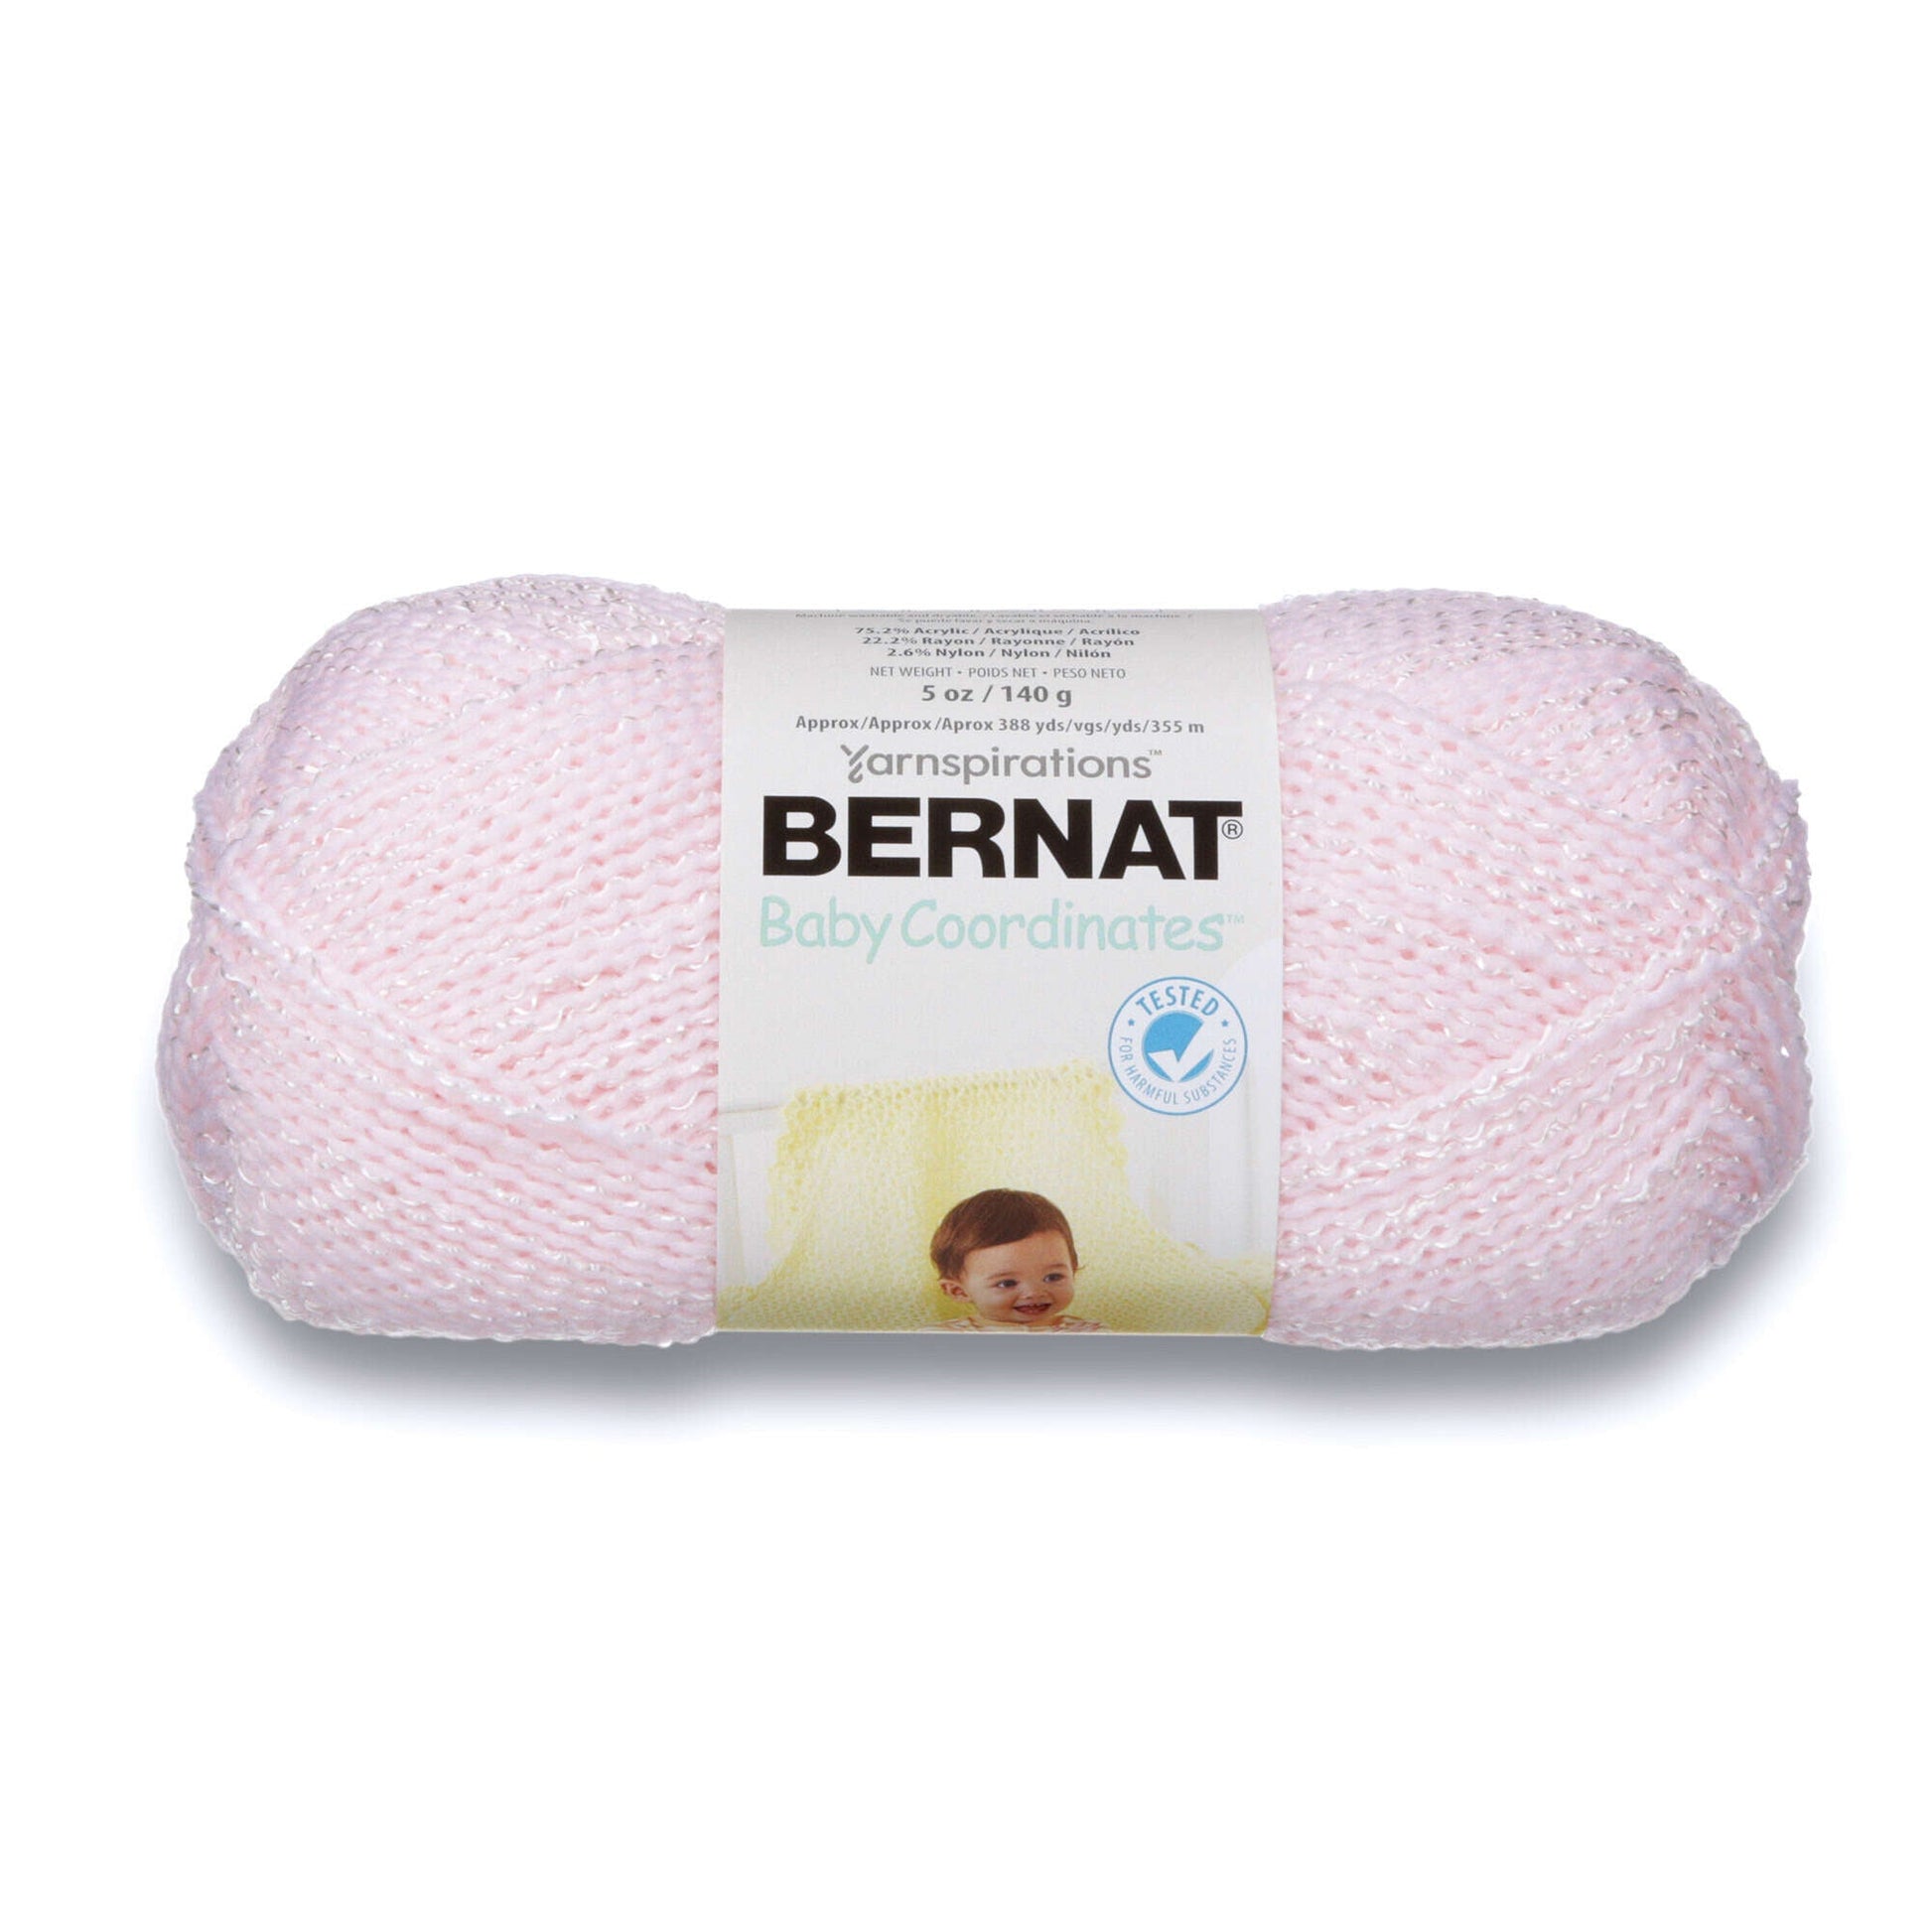 Bernat Baby Coordinates Yarn - Discontinued Shades